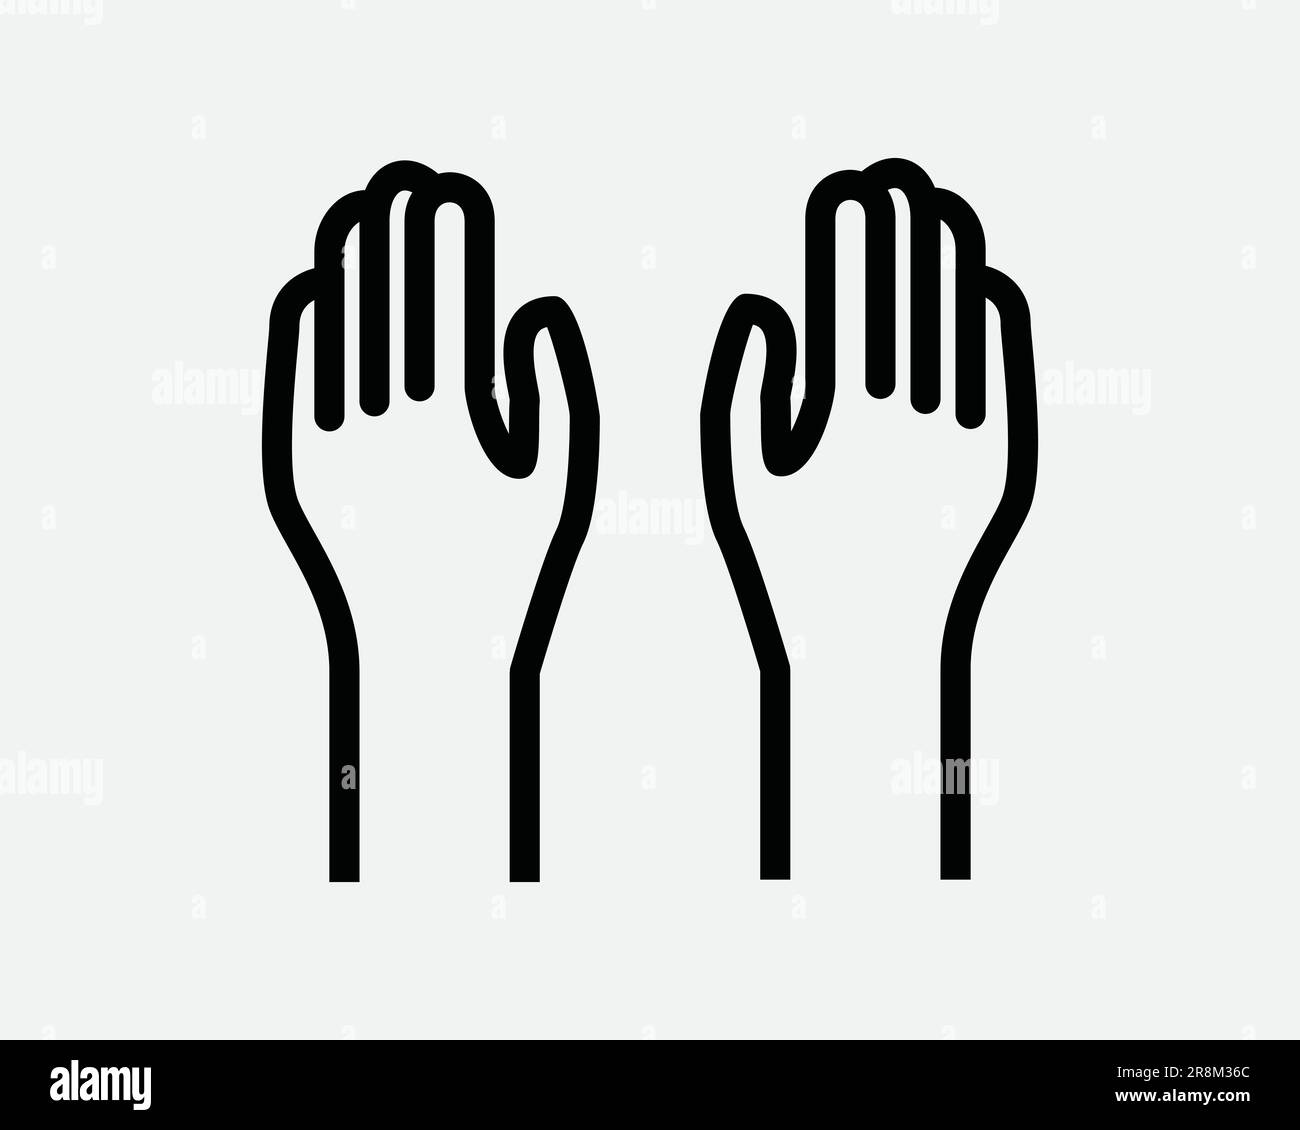 Symbol Für Zwei Hände. 2 Arme Hoch, Hoch, Hoch, Hoch Mit Den Fingern, Die Hand Ergibt Sich. Schwarzes weißes Symbol Kontur Form Bildmaterial Grafik Clipart EPS-Vektor Stock Vektor